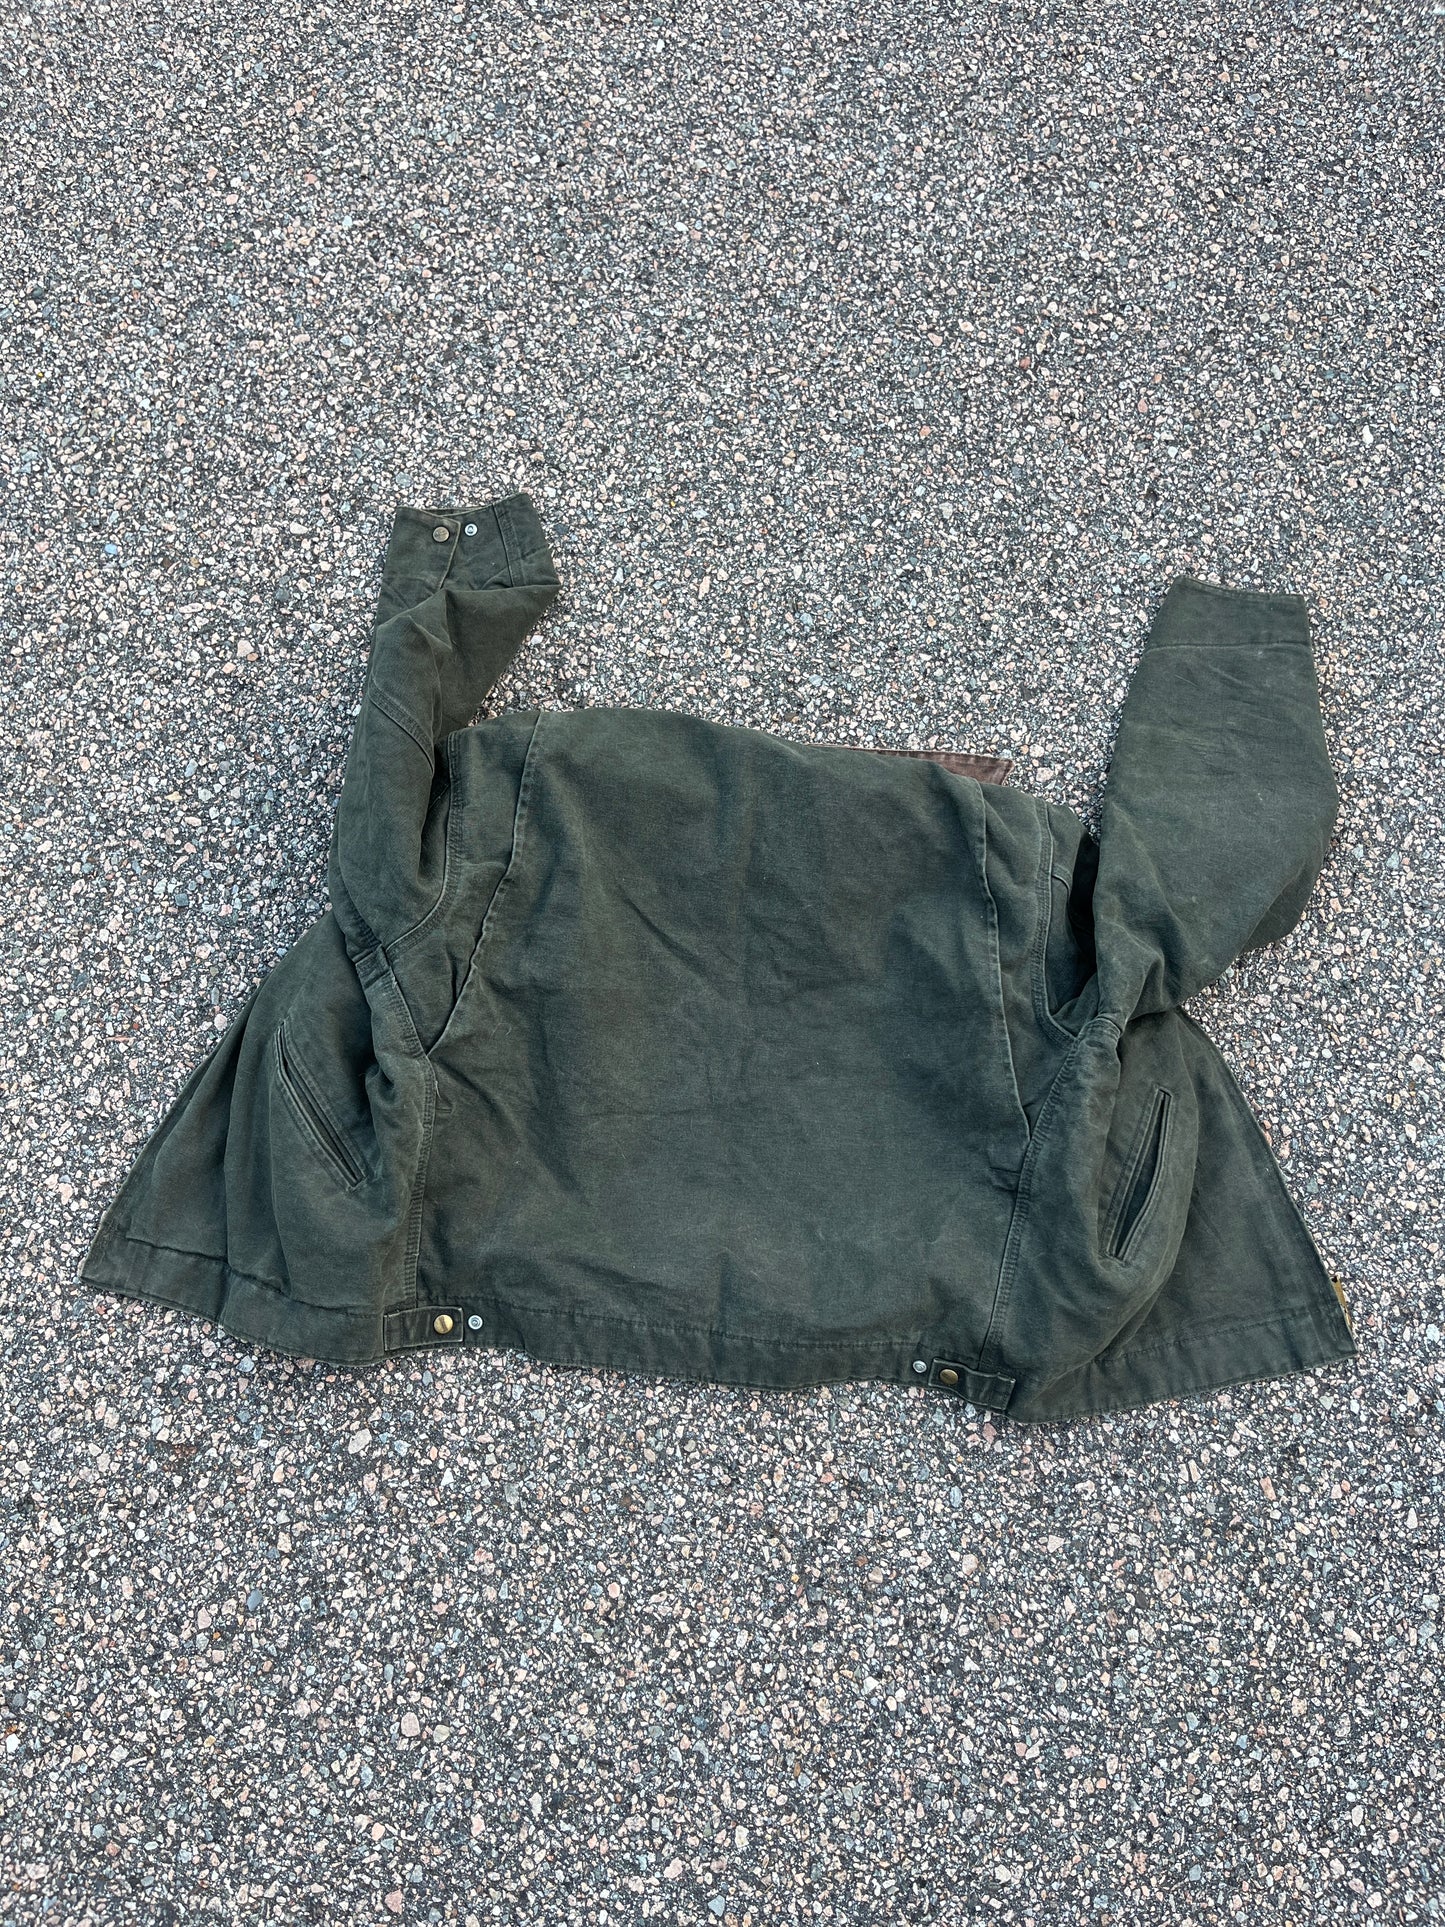 Faded Olive Green Carhartt Detroit Jacket - Medium